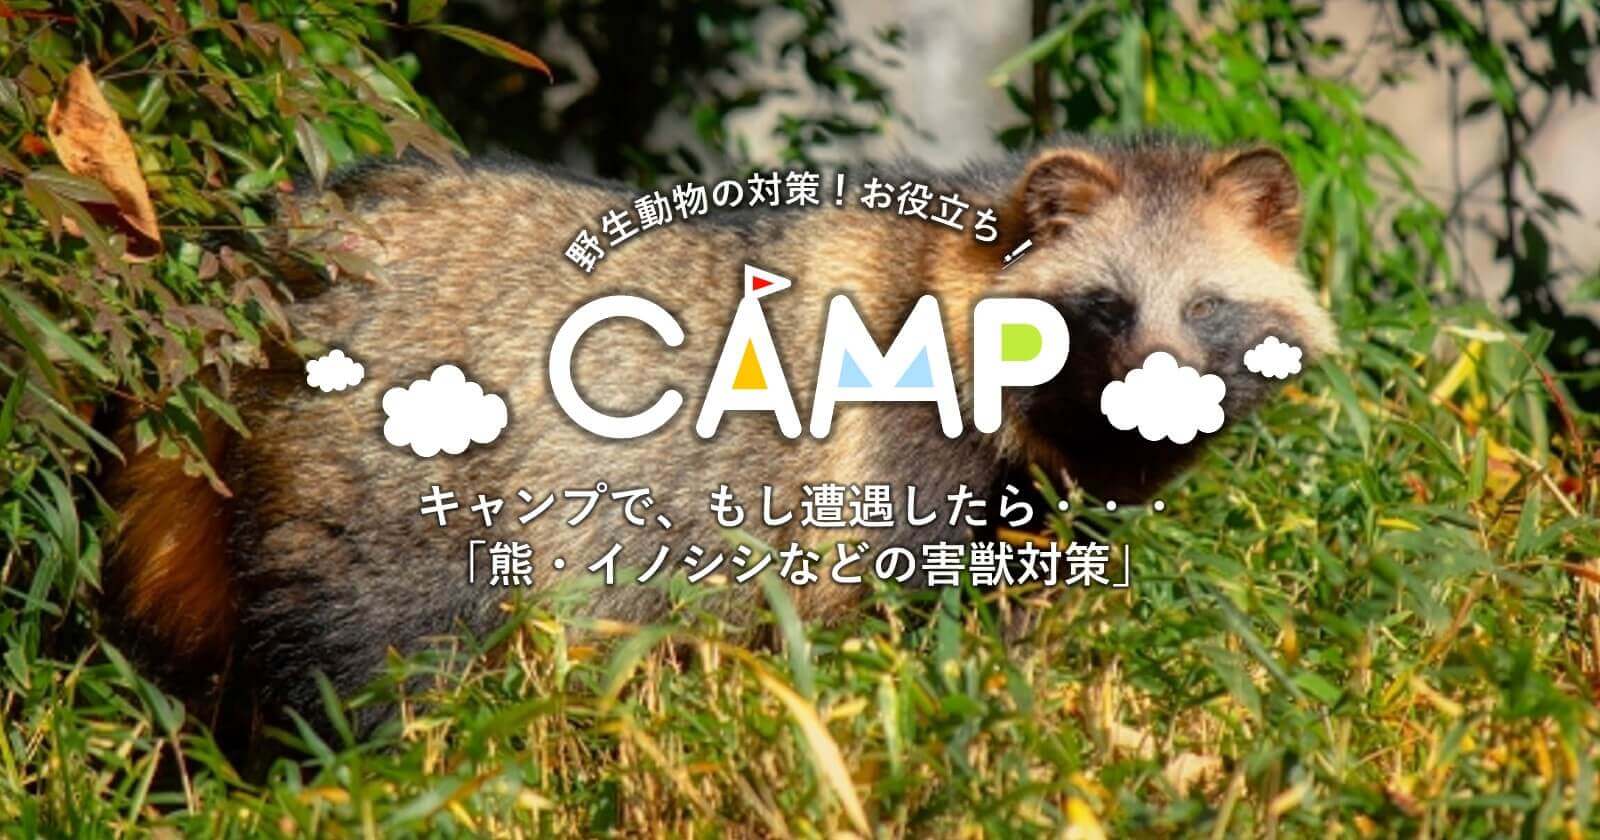 キャンプで もし遭遇したら 熊 イノシシなどの害獣対策 キャンプ アウトドアのtakibi タキビ Part 2